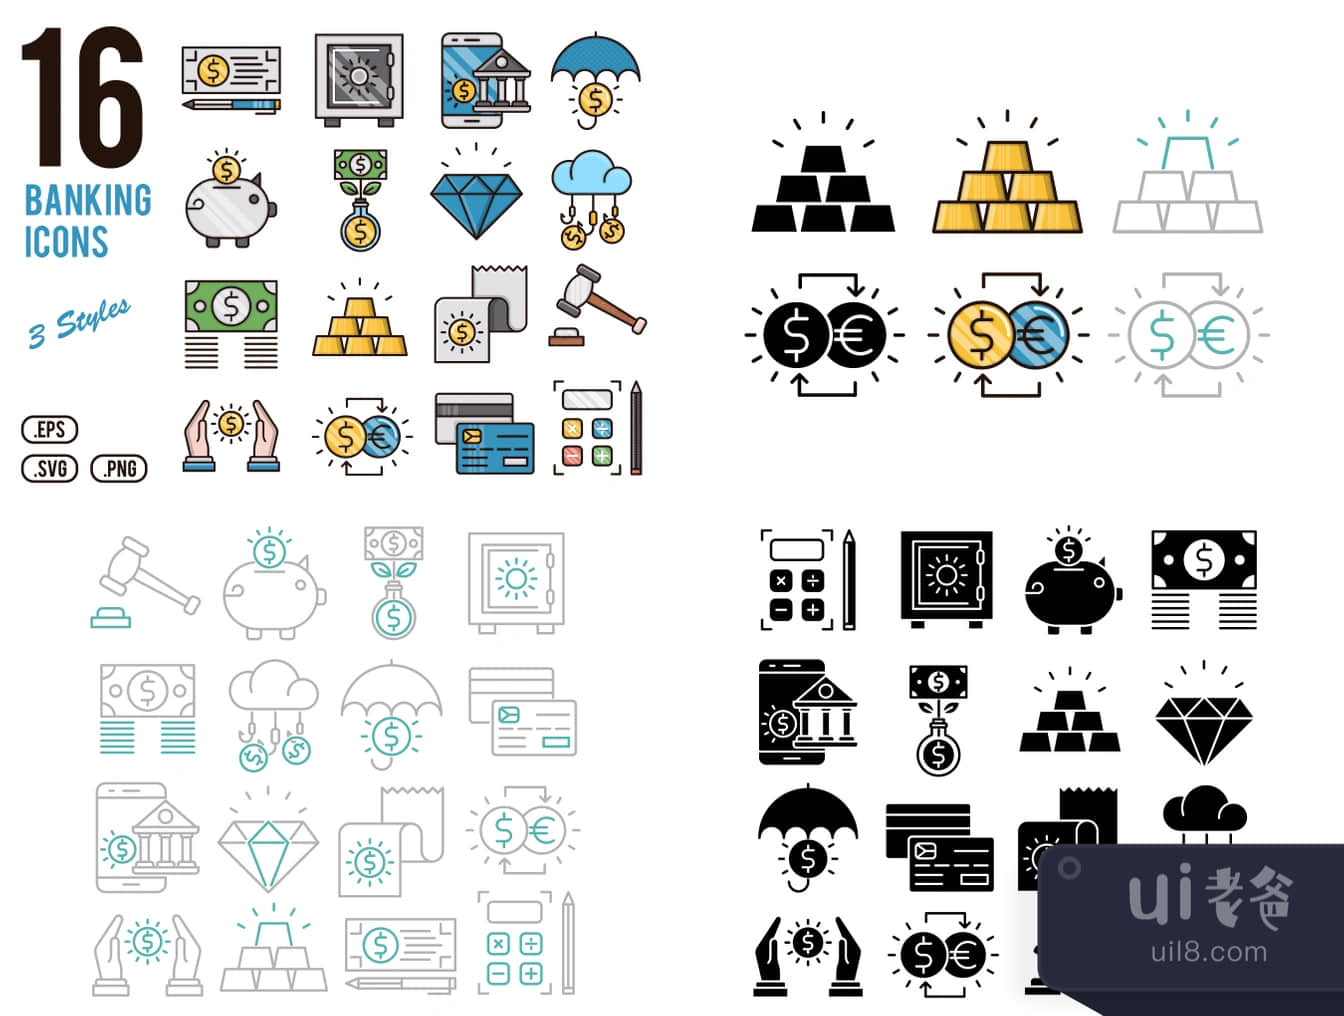 16个银行图标 (16 Banking Icons)插图